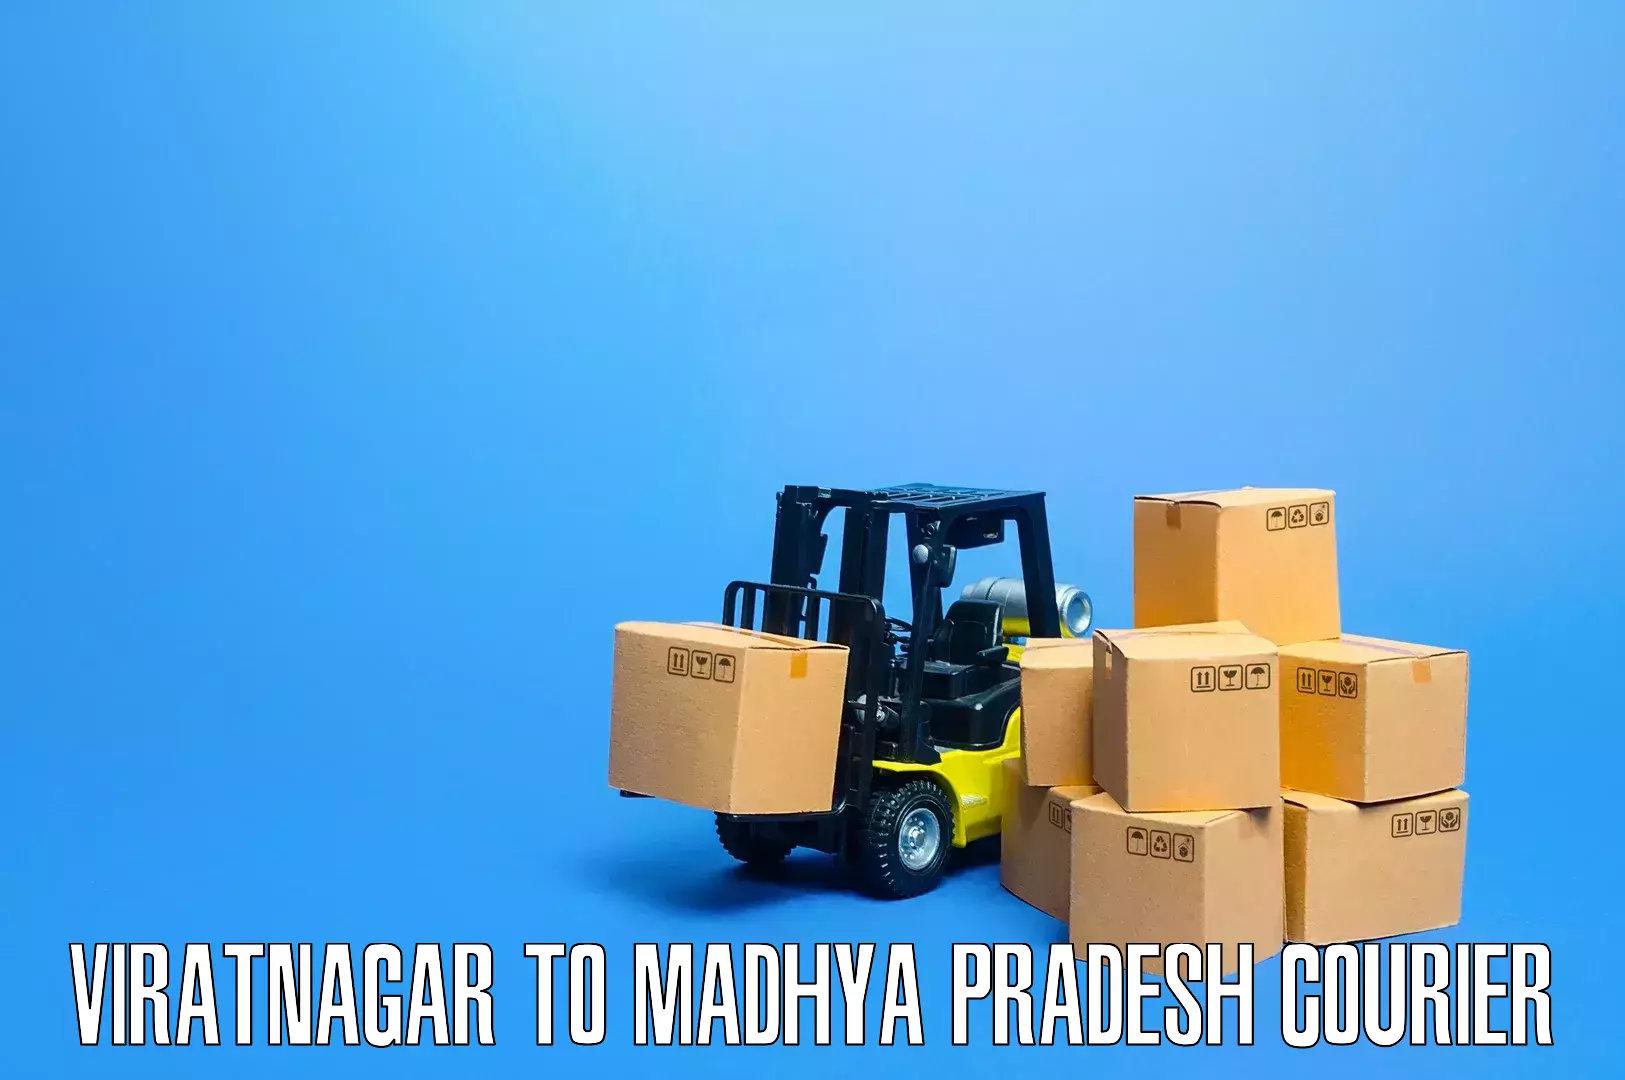 Professional furniture moving Viratnagar to Mandla